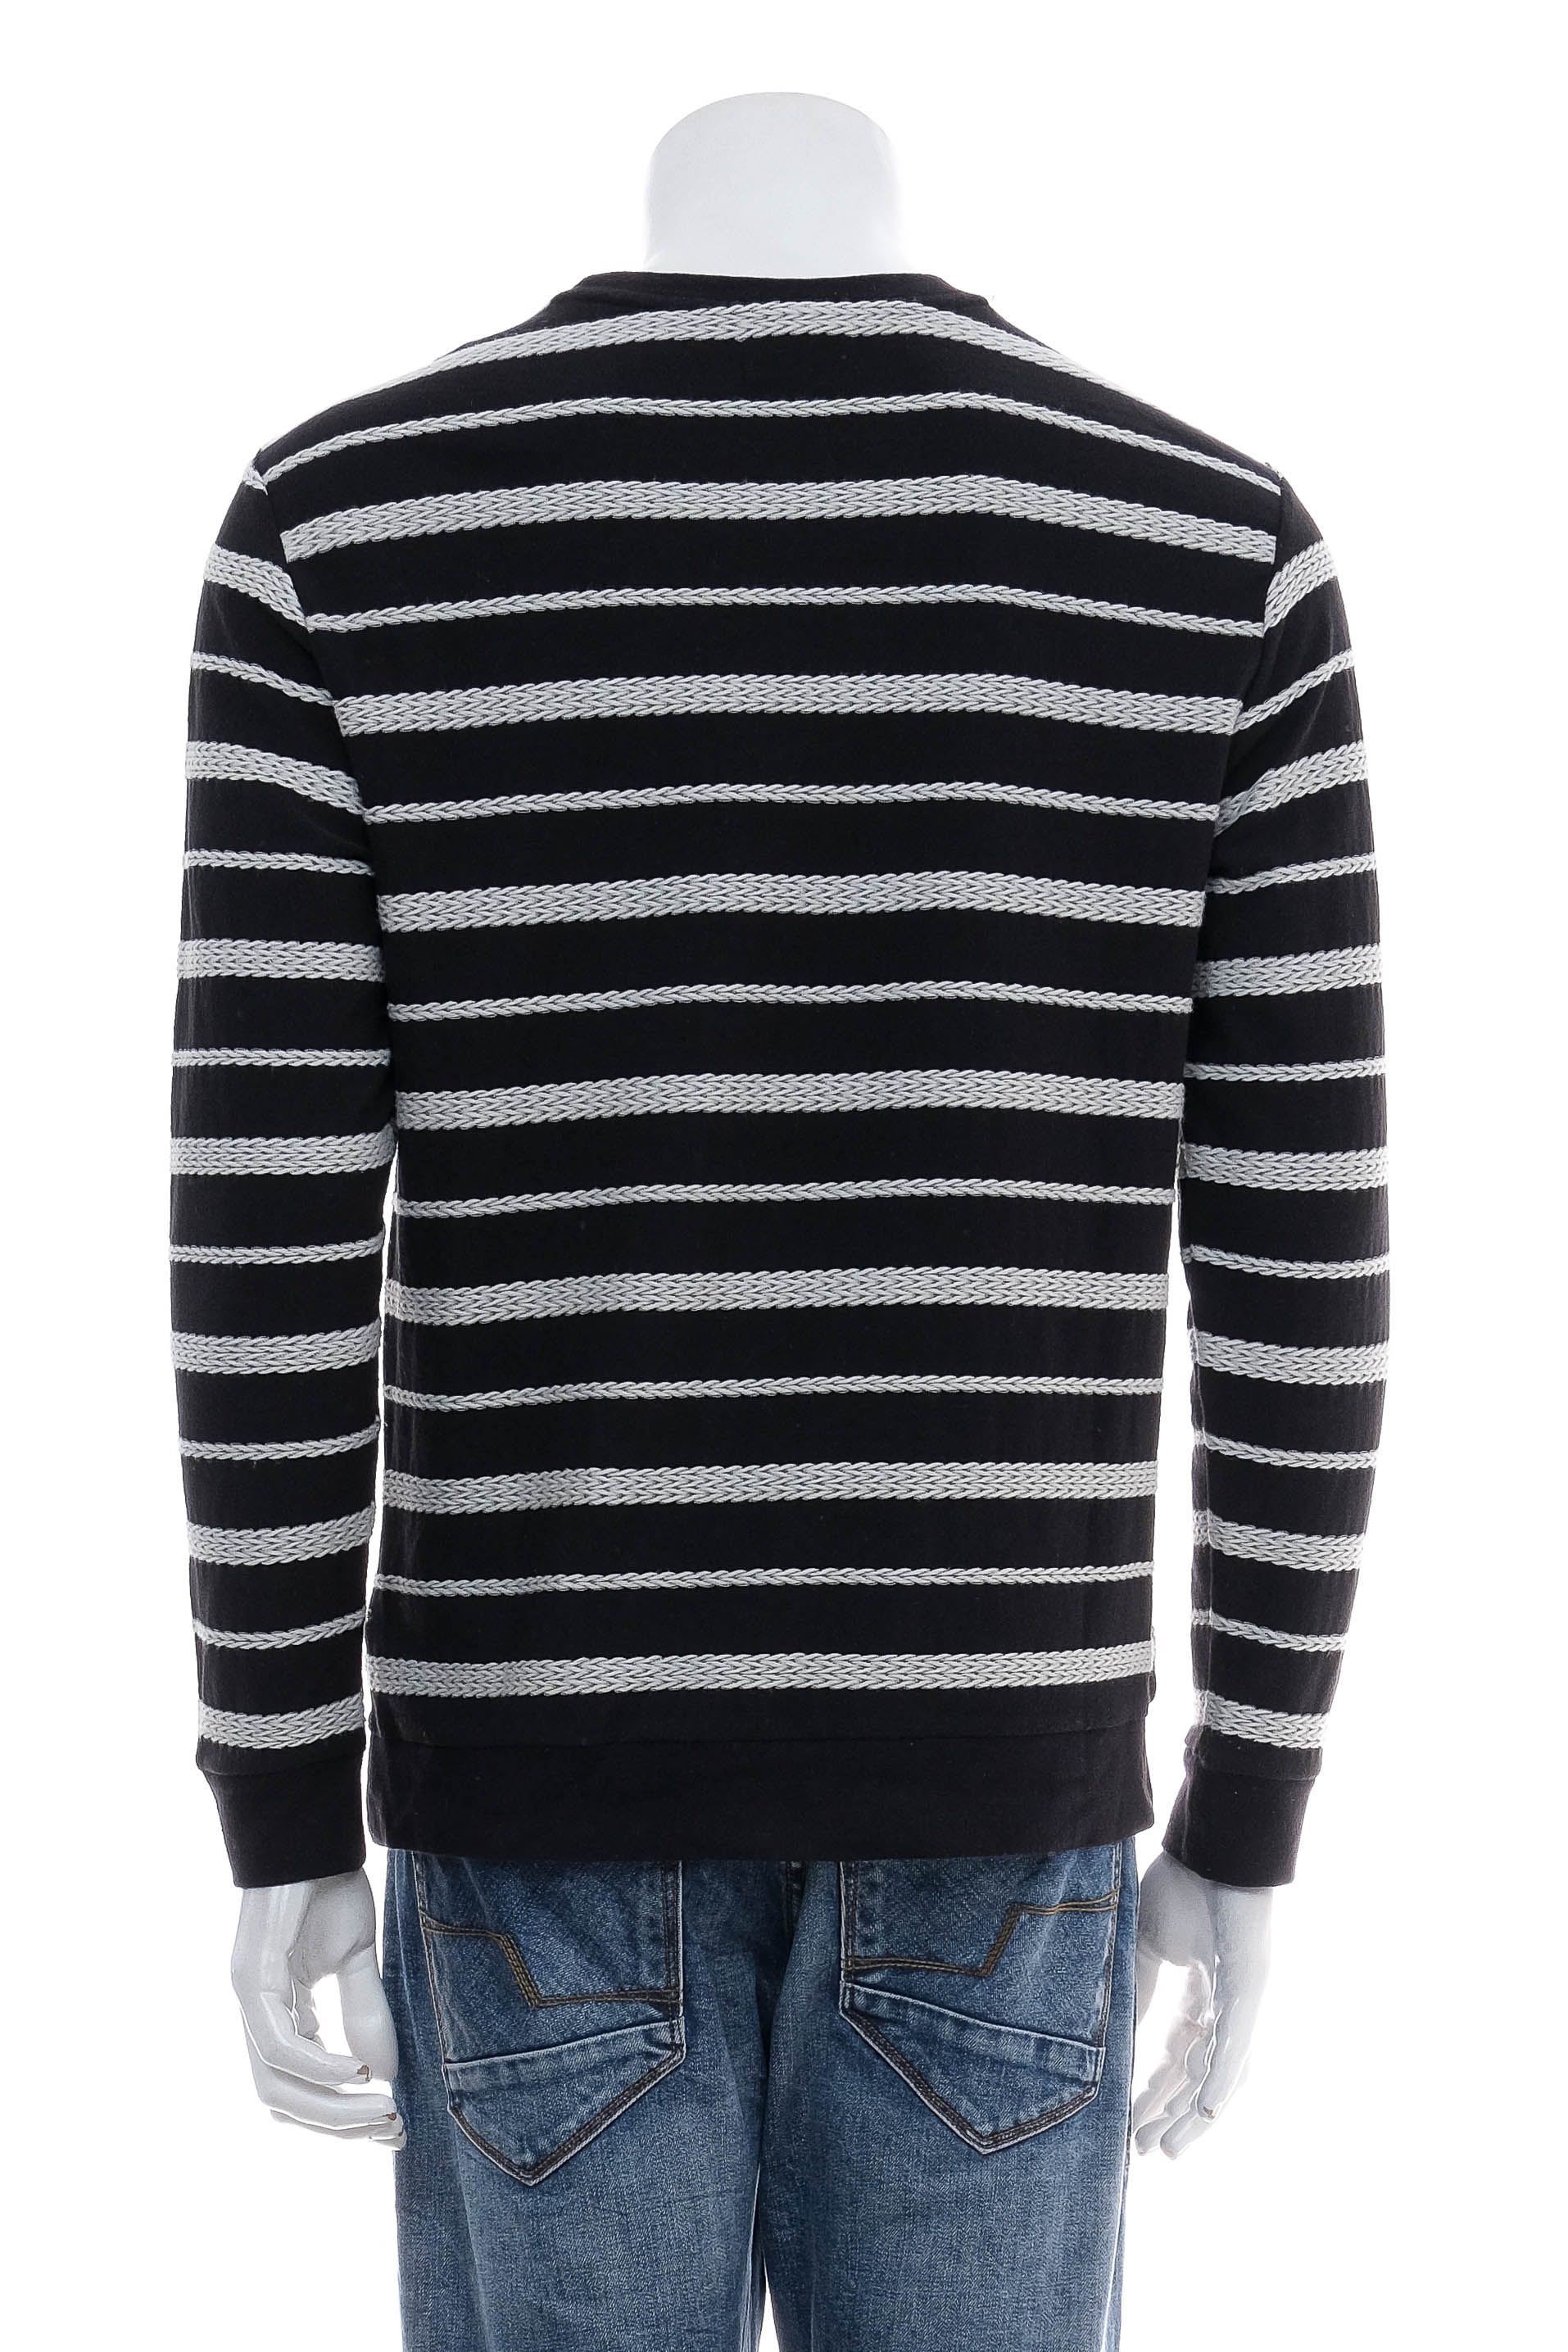 Men's sweater - ZARA Man - 1